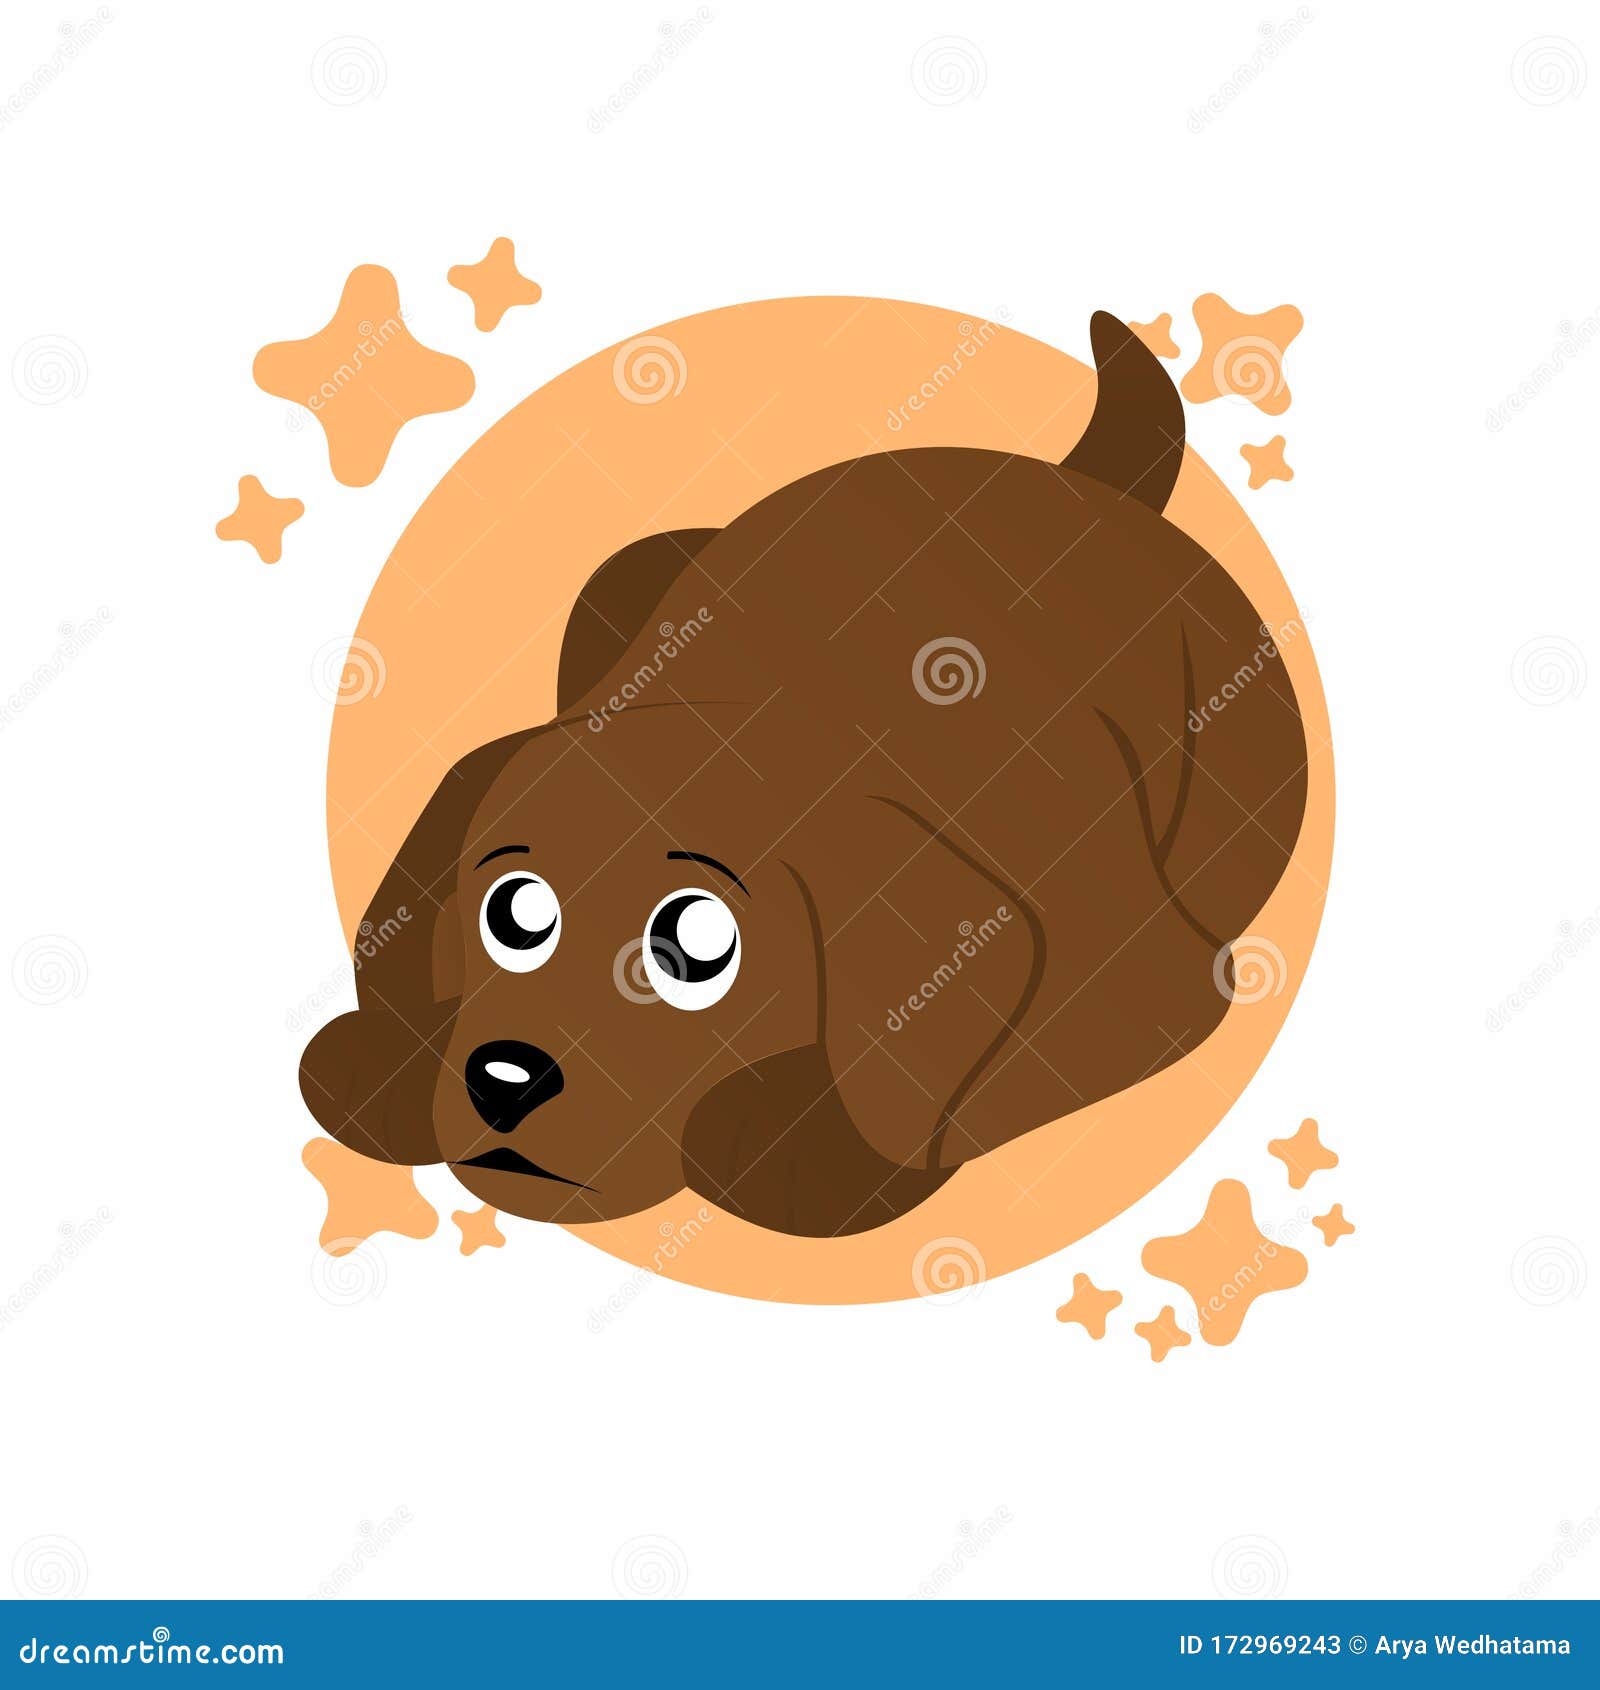 Ilustración De Dibujos Animados De Perros Solitarios De Color Marrón,  Carácter Gracioso, Diseño Plano Imagen de archivo - Ilustración de perro,  cubo: 172969243